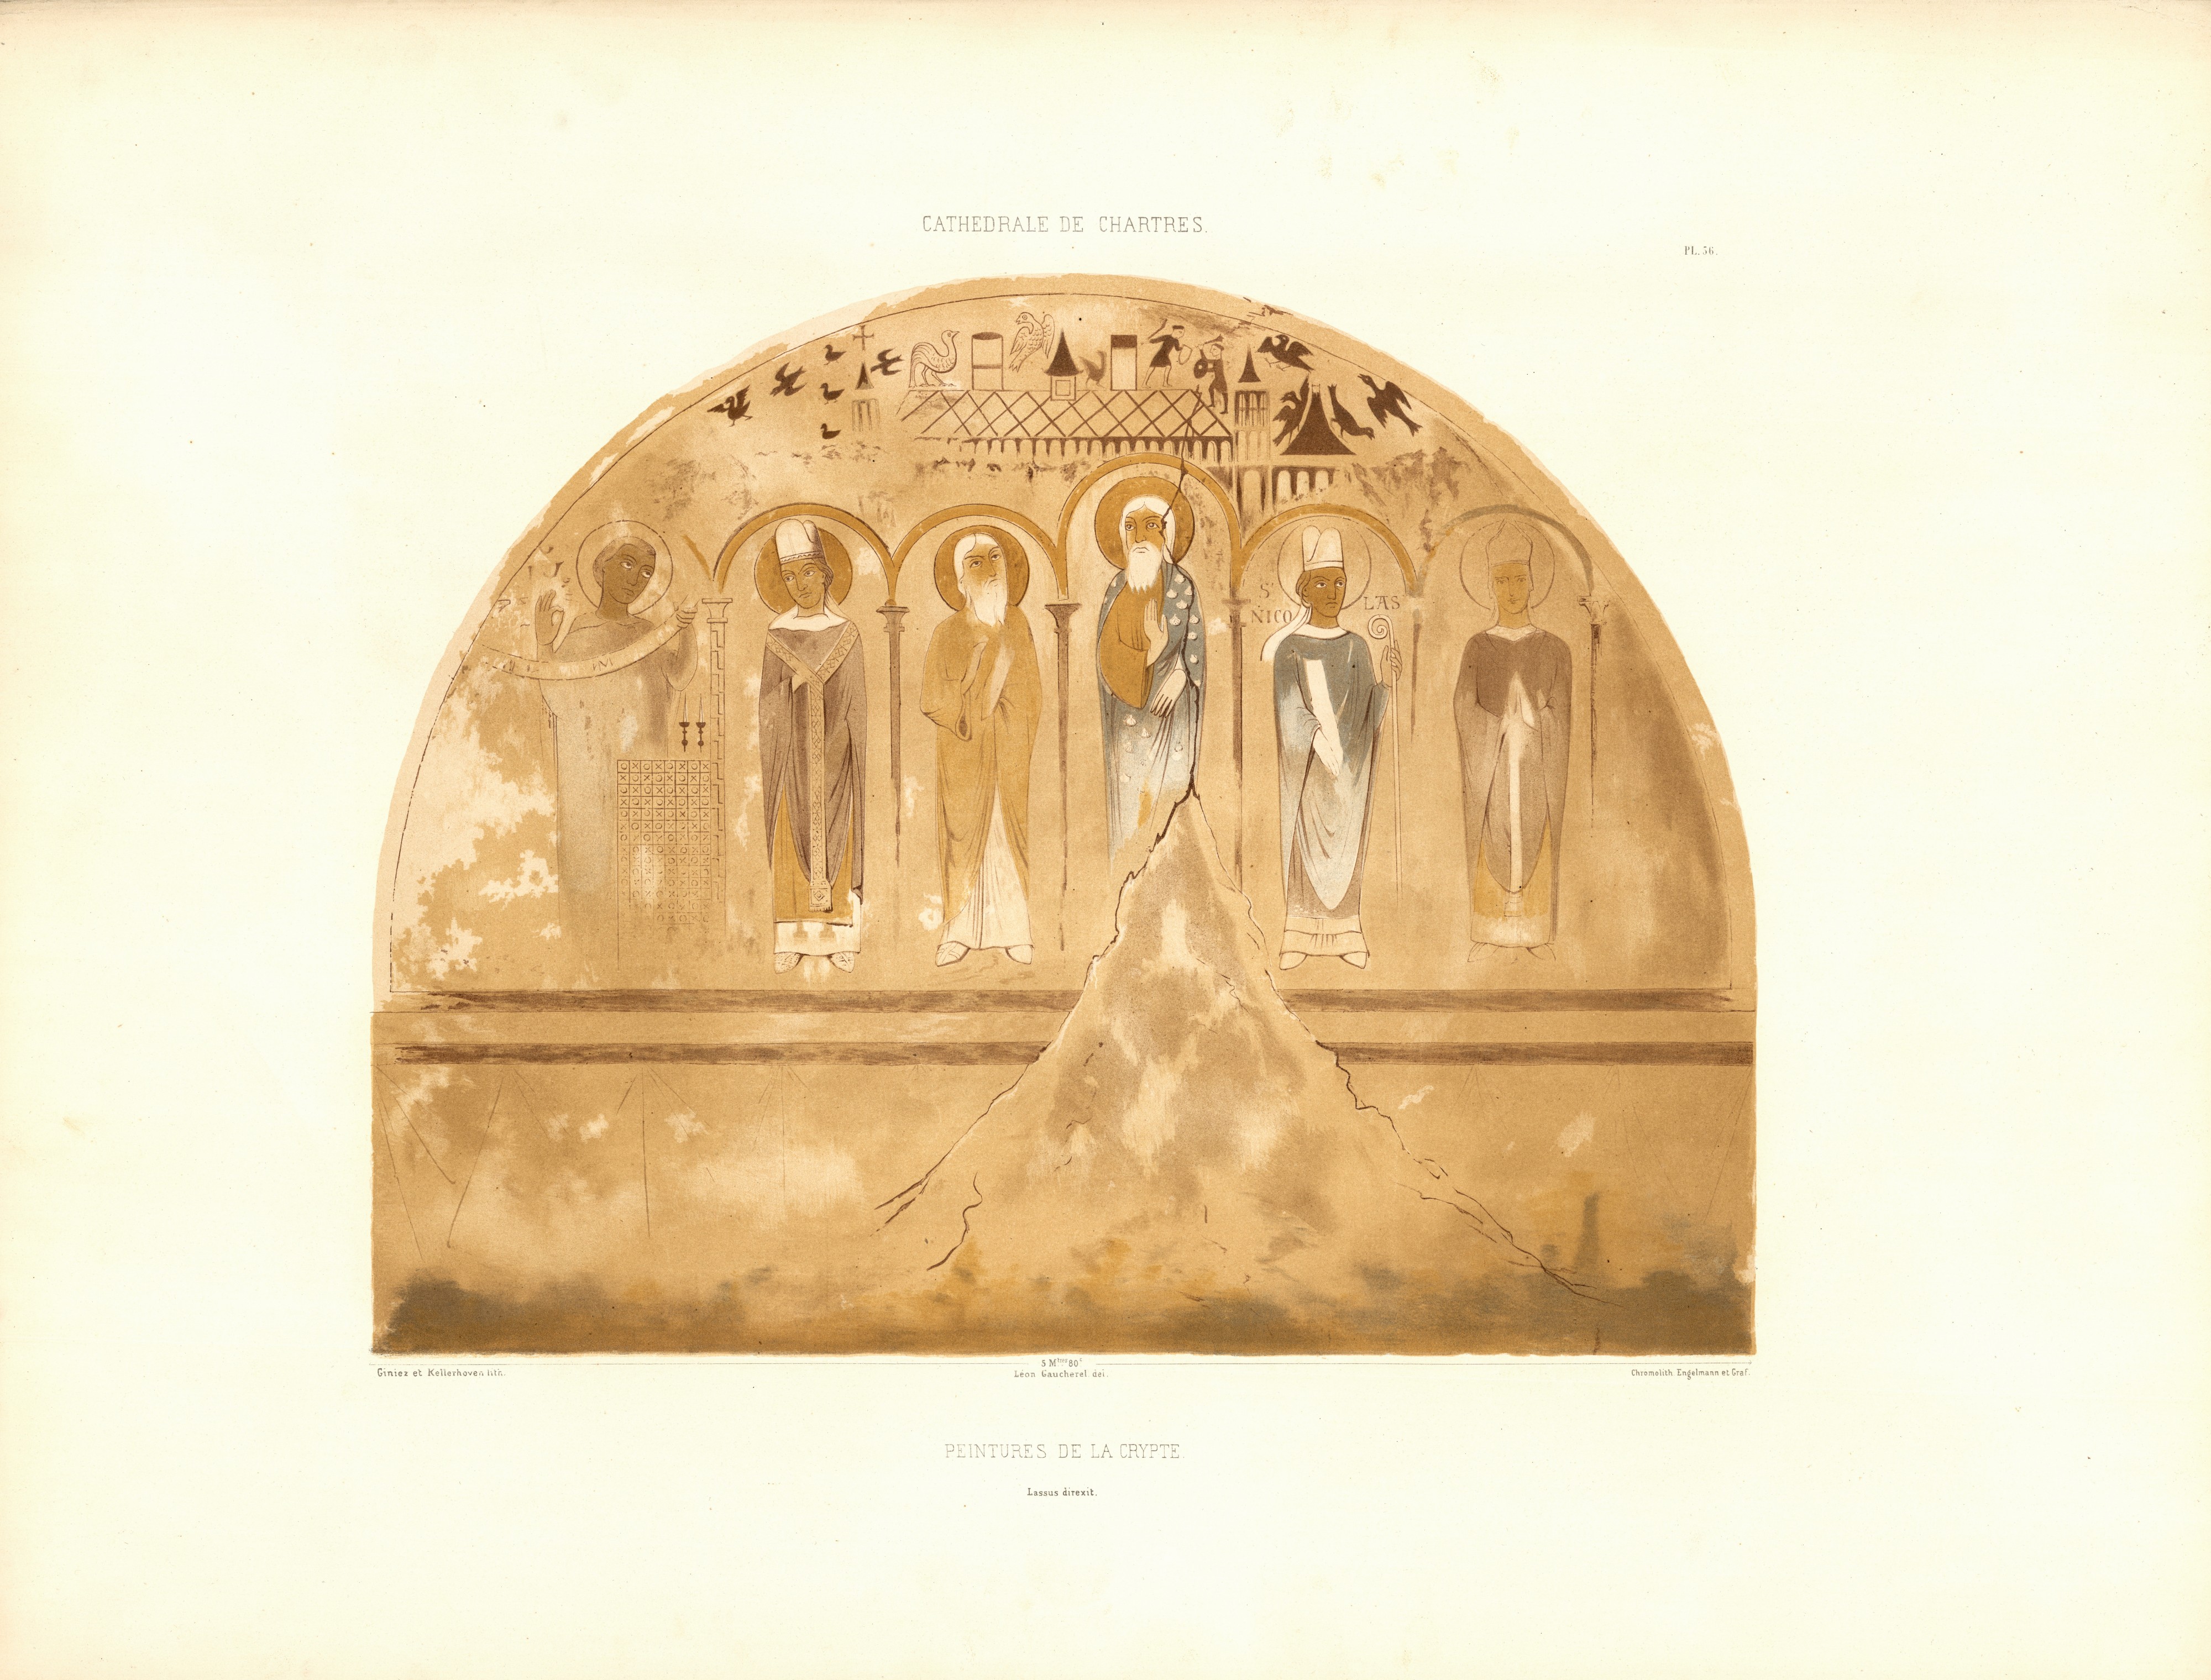 Monografie de la Cathedrale de Chartres - Atlas - 71 Painture de la crypte - Chromo-Lithographie